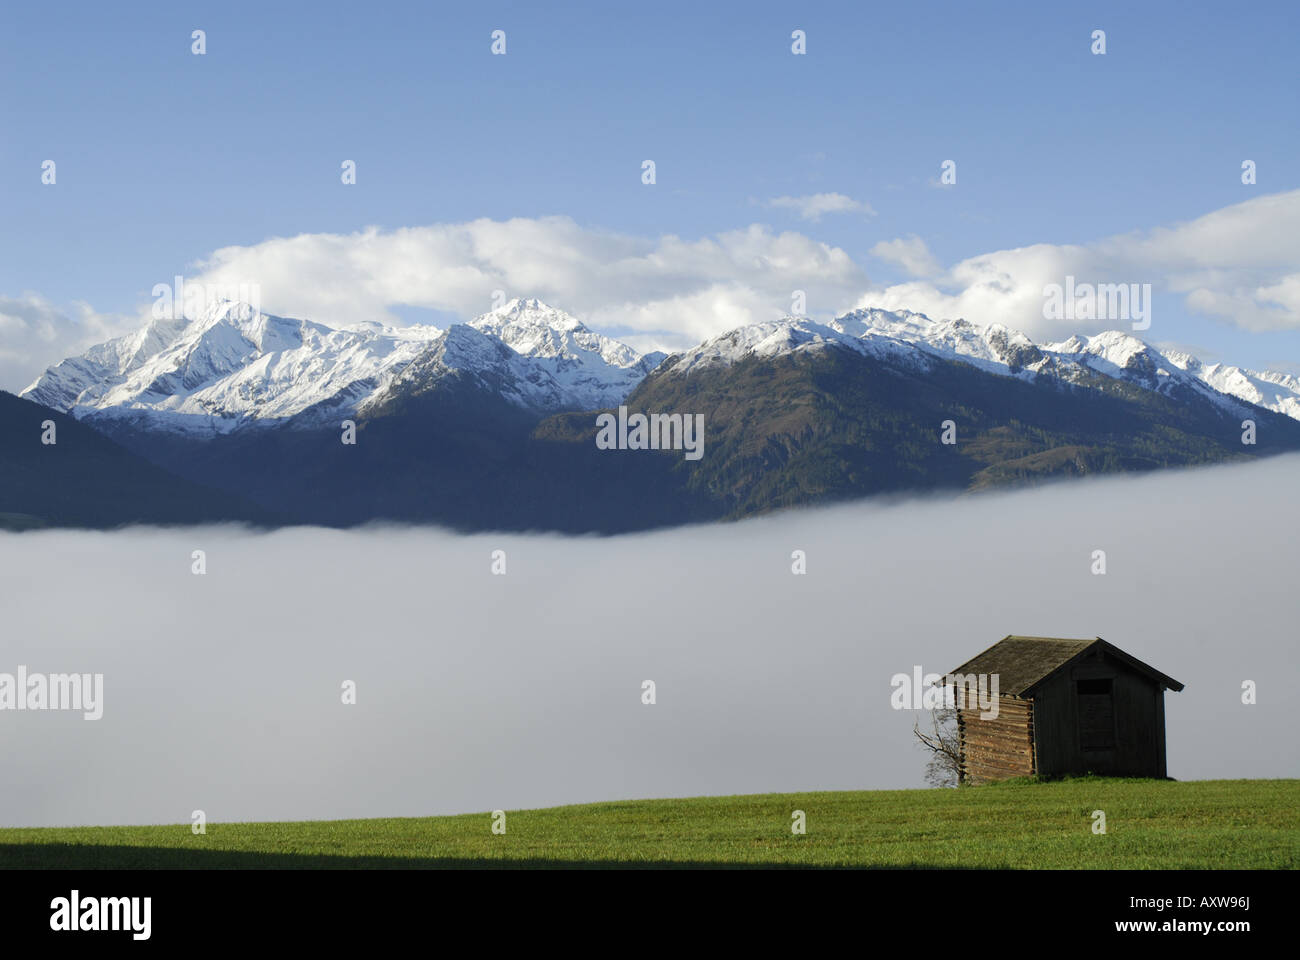 Grange, bâtiment agricole sur les agriculteurs alpin sur la cabane de nuages, l'Autriche, Salzburger Land, Mittersil Banque D'Images